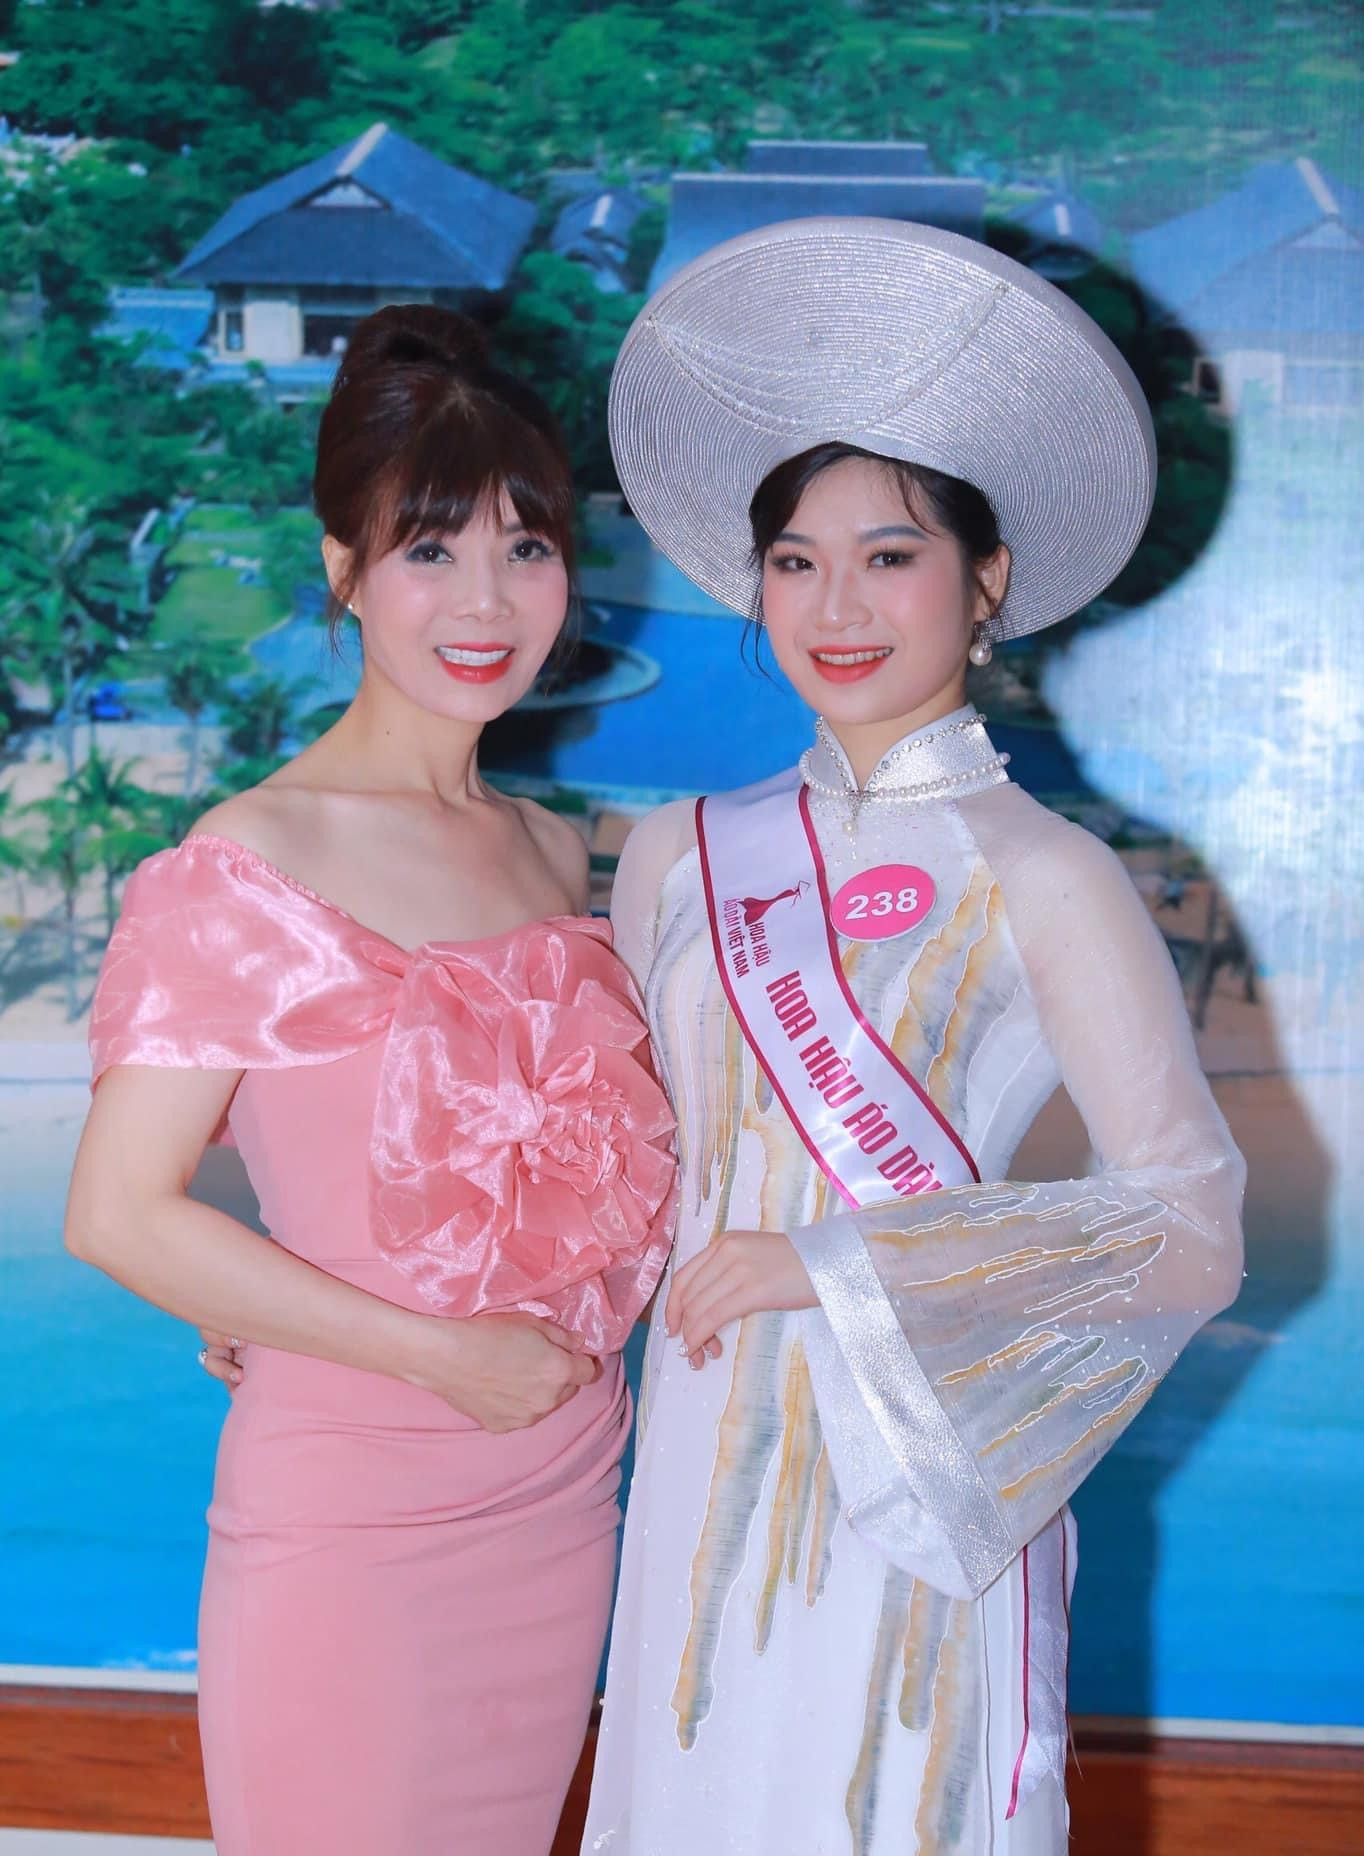 Nữ sinh Y khoa thạo 5 thứ tiếng, hát hay thi Miss World Vietnam 2023